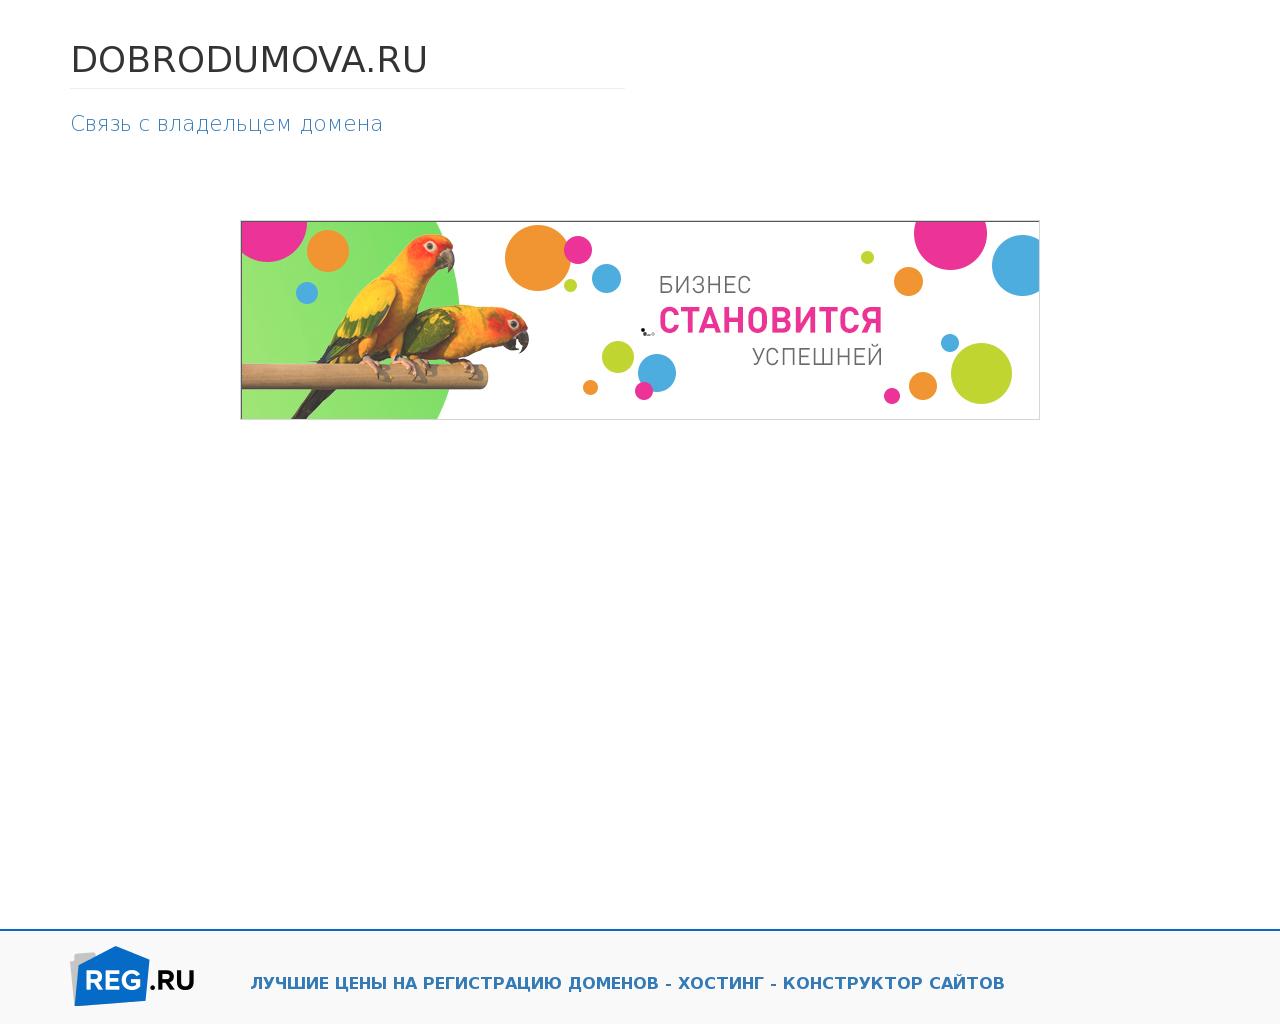 Изображение сайта dobrodumova.ru в разрешении 1280x1024